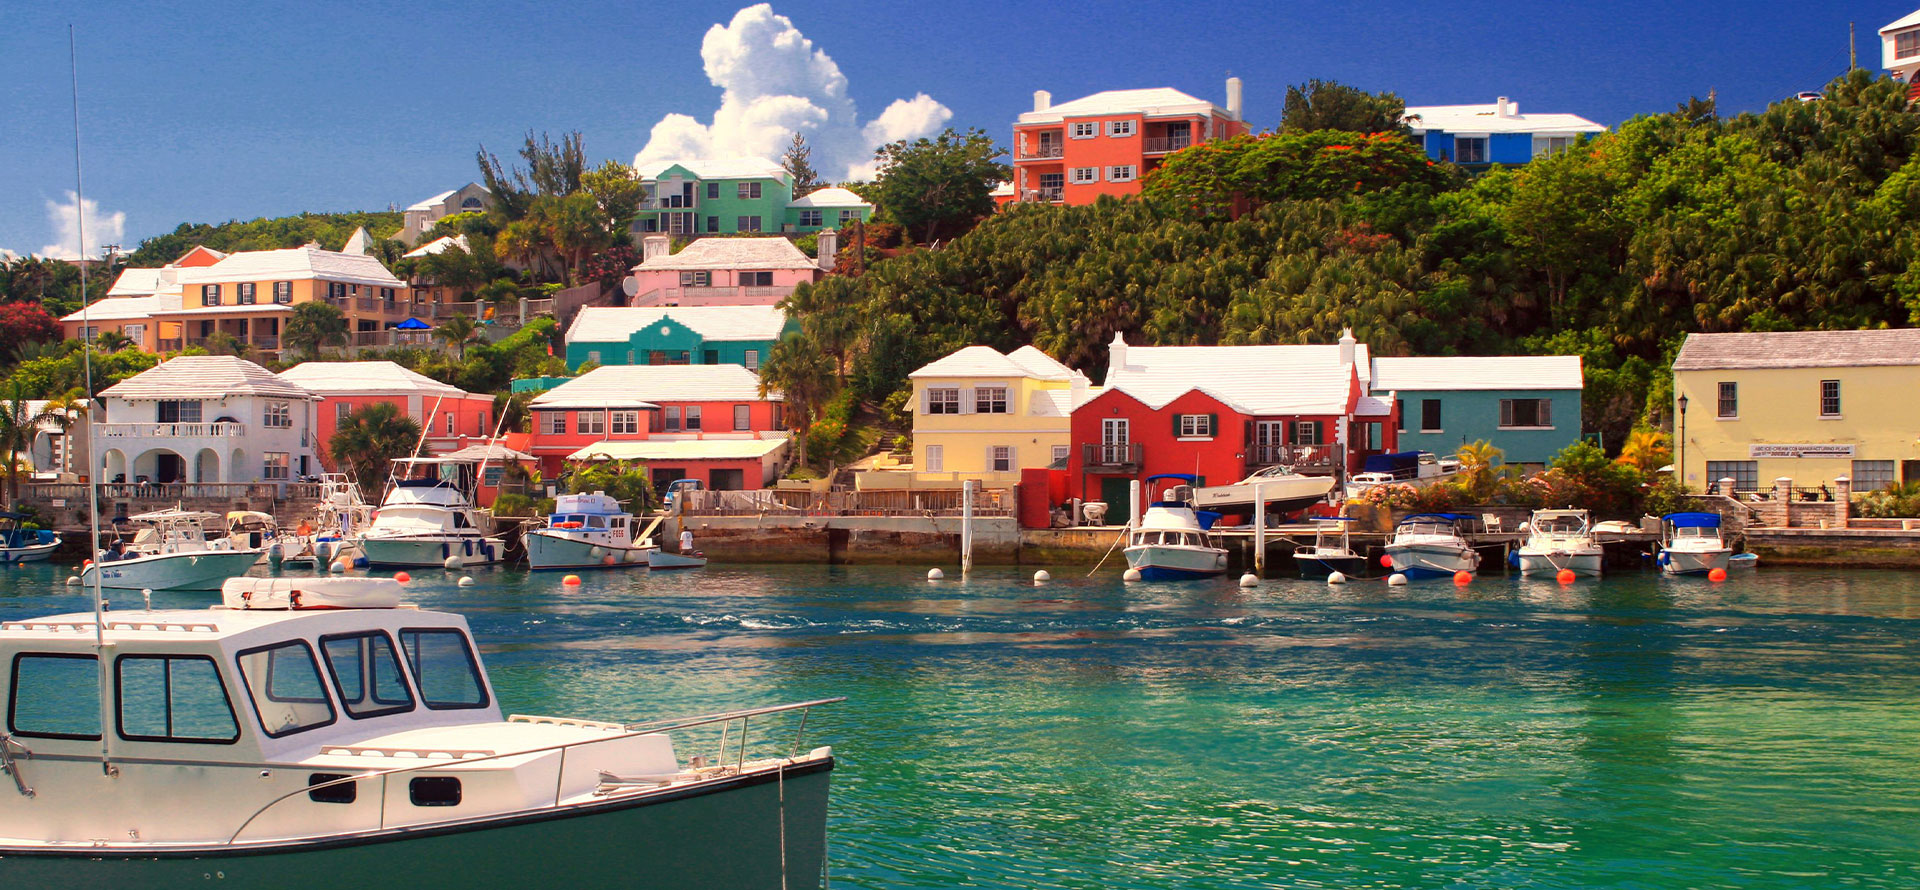 Bermuda all inclusive resorts boat.